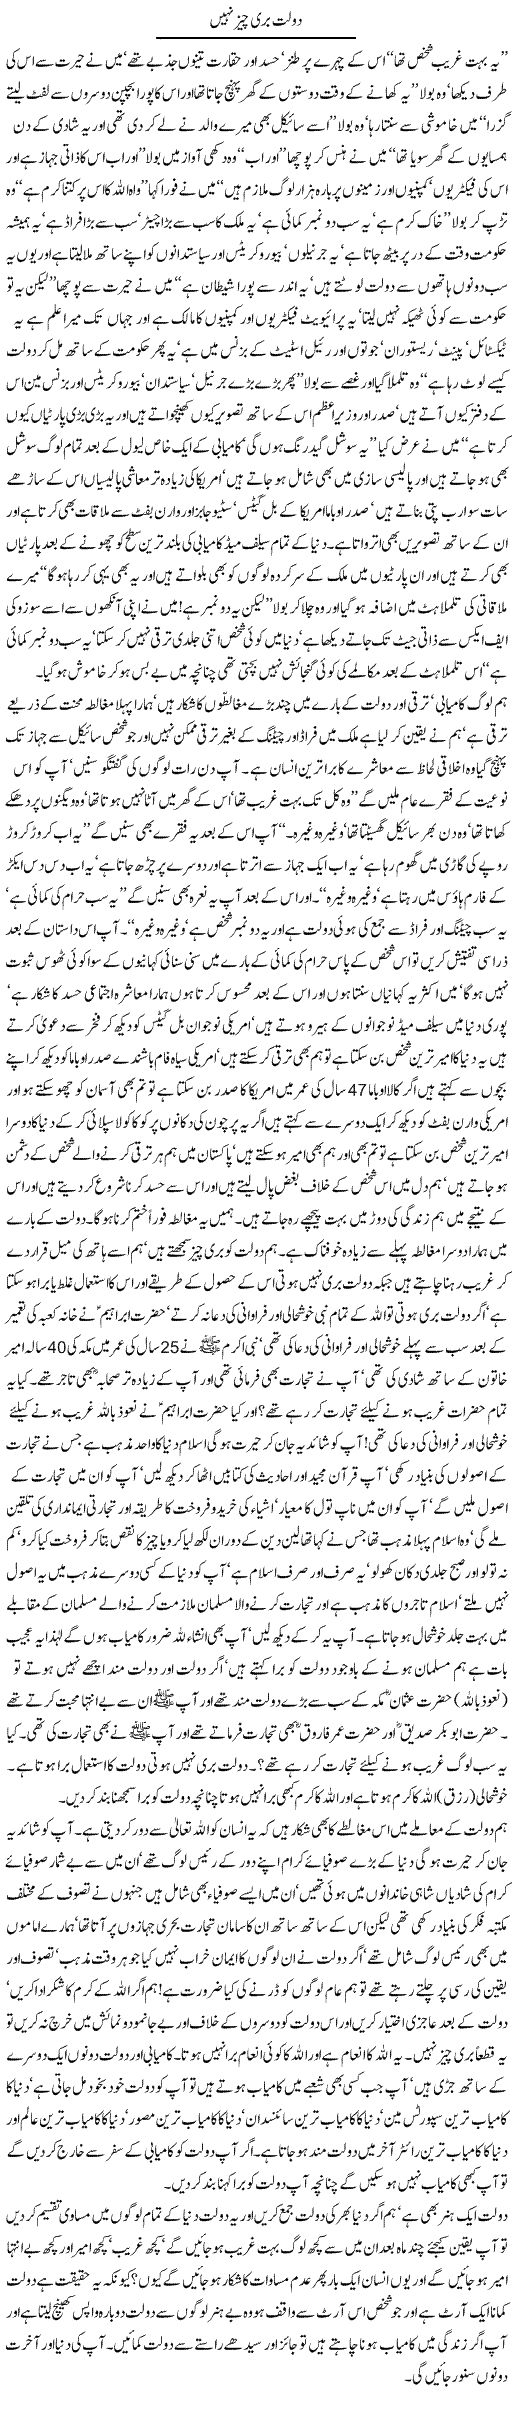 Wealth of Human - Urdu Article